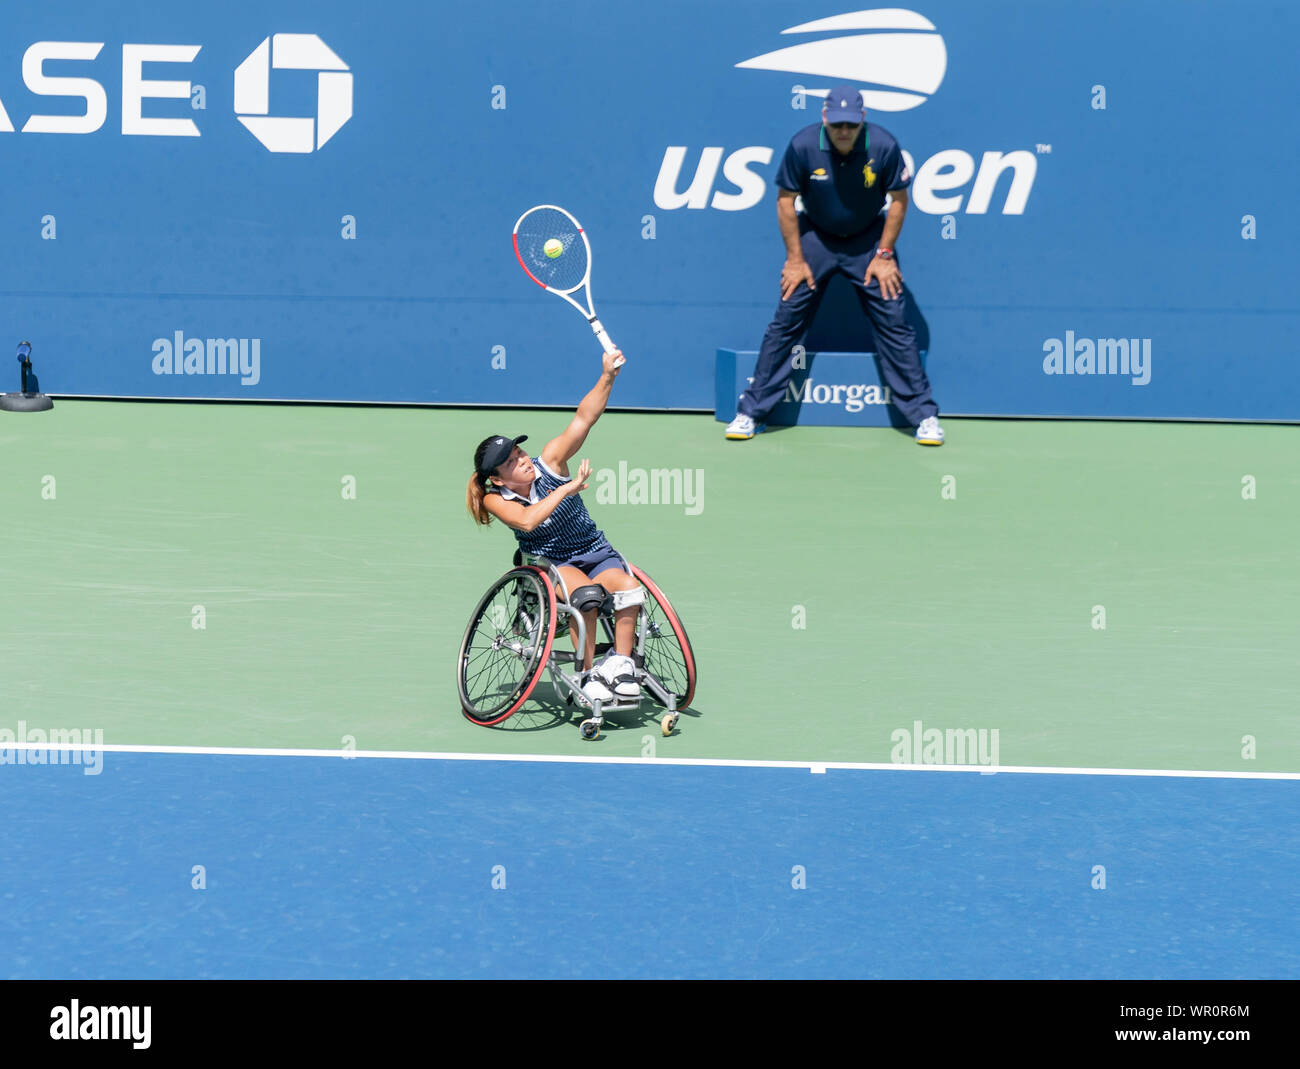 New York, NY - 8. September 2019: Yui Kamiji (Japan), die in Aktion während der Rollstuhl Damen Finale von US Open gegen Diede De Groot (Niederlande) an Billie Jean King National Tennis Center Stockfoto